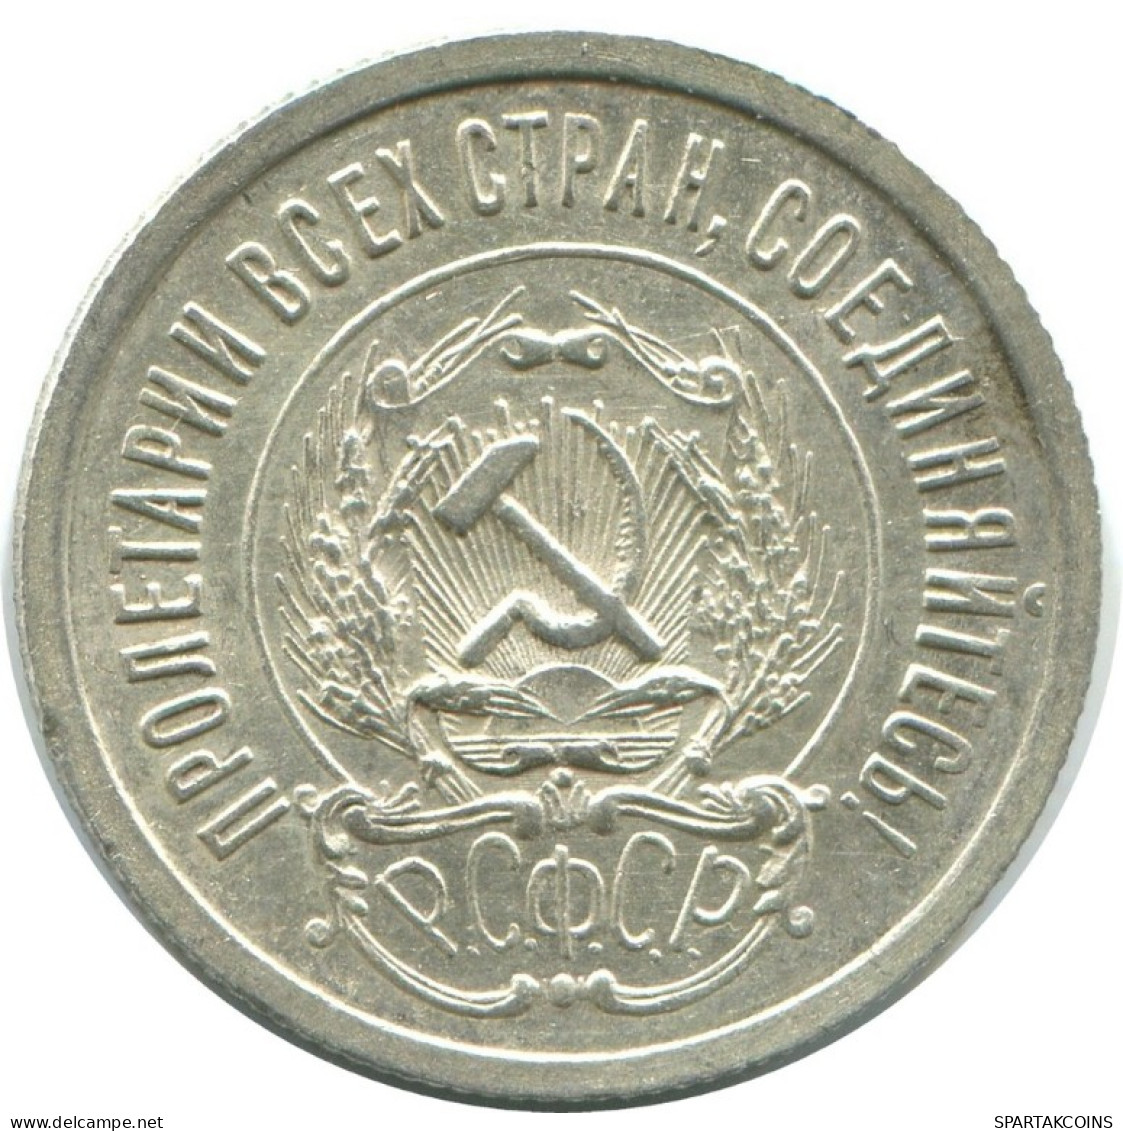 20 KOPEKS 1923 RUSSLAND RUSSIA RSFSR SILBER Münze HIGH GRADE #AF683.D.A - Russia